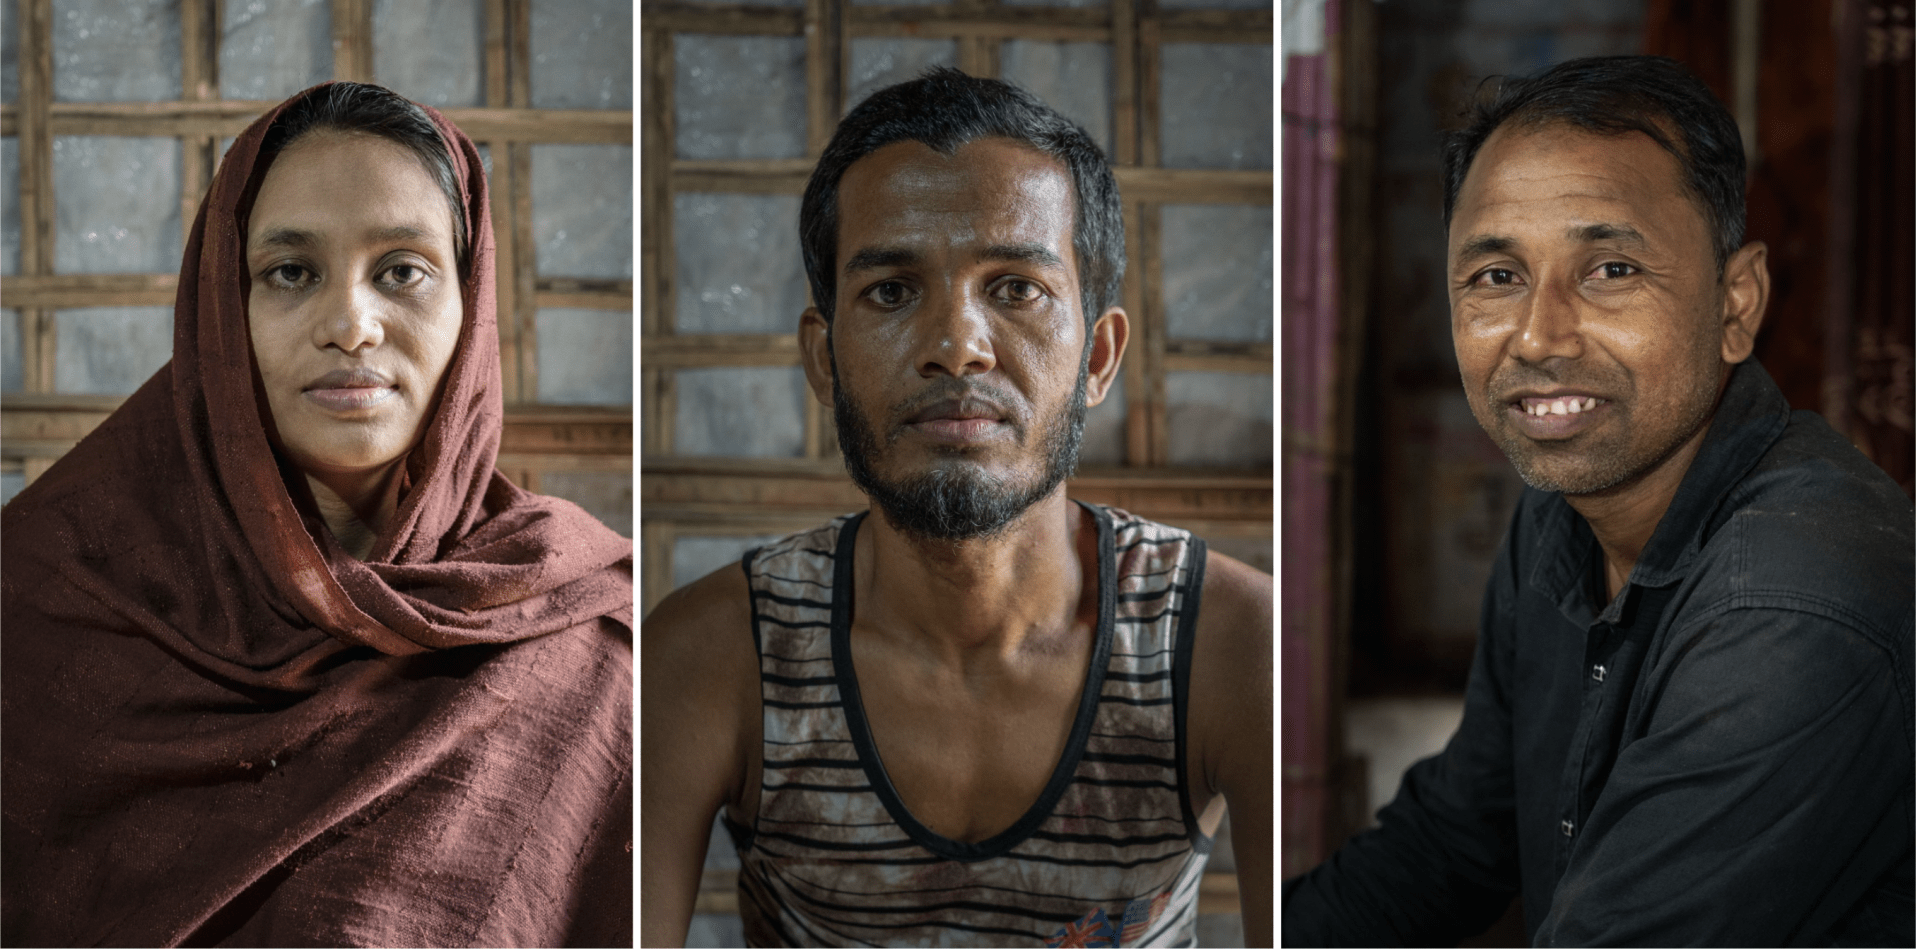 Portraits de Sobida (gauche), Mujibullah (centre) et Shamsul (droite), réfugiés rohingyas vivant dans les camps de Cox'sbazar, au Bangladesh. Tous les trois ont été testés positifs au virus de l’hépatite C.